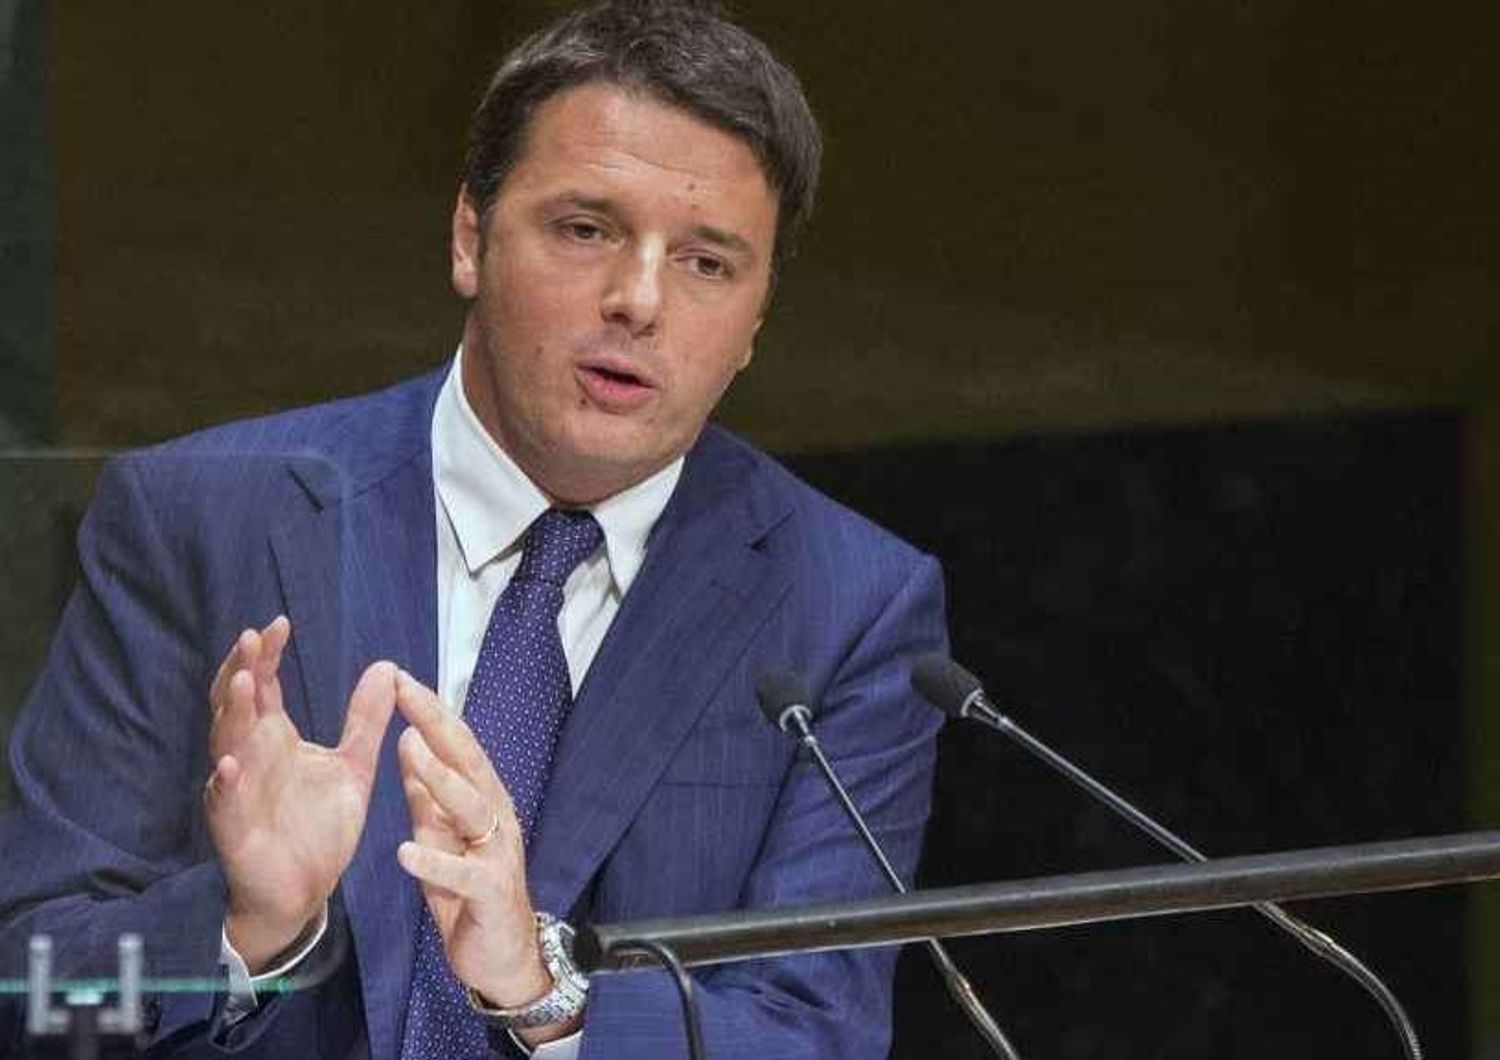 I magistrati contro Renzi, "piu' rispetto e basta falsita'"